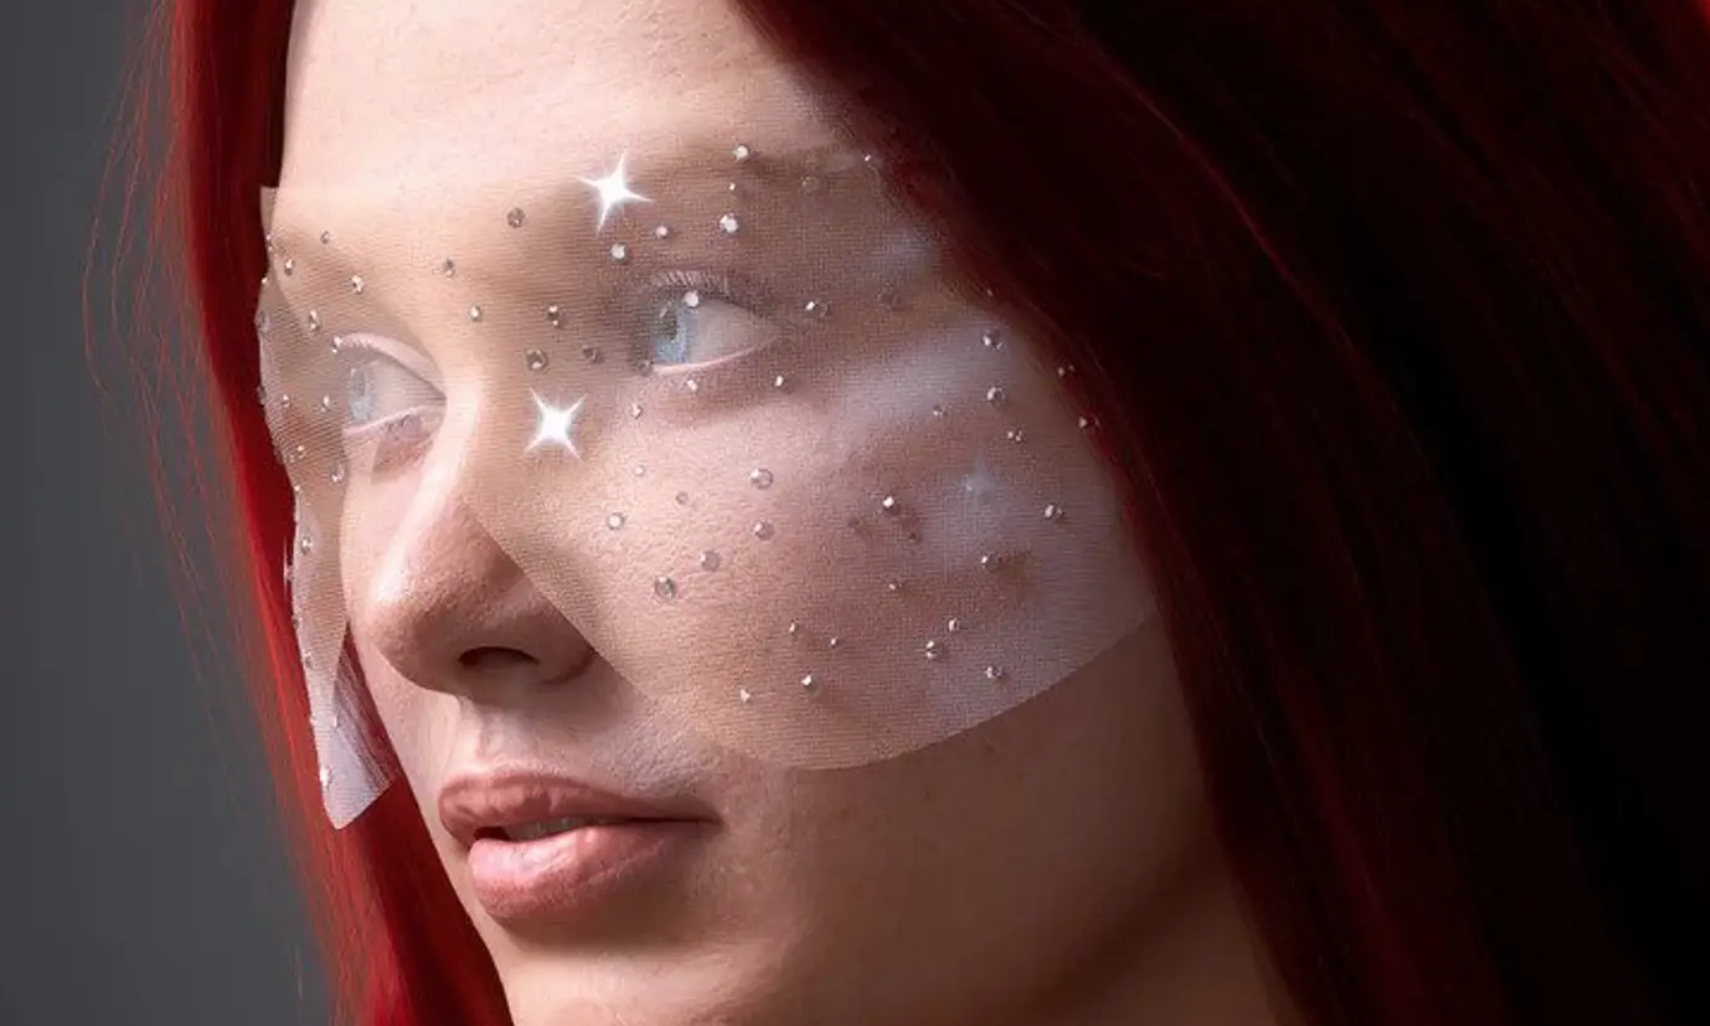 联合 YouTuber 兼歌手 Grace Gaustad，名人化妆师 Jo Baker 推出数字化美妆品牌